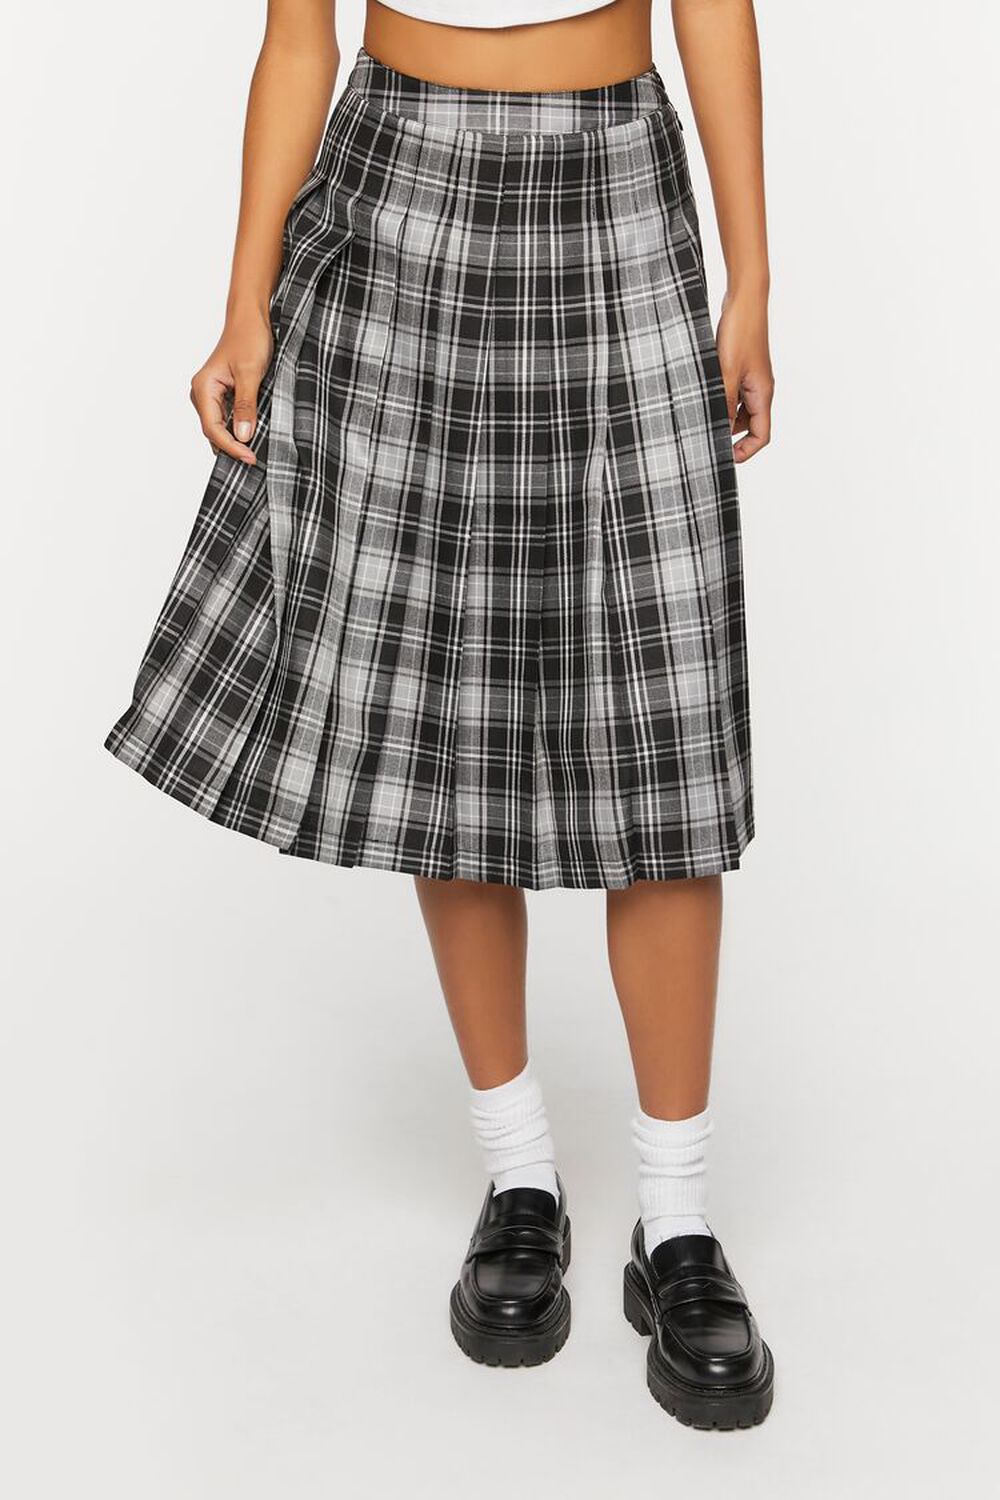 BLACK/MULTI Pleated Plaid Midi Skirt, image 2